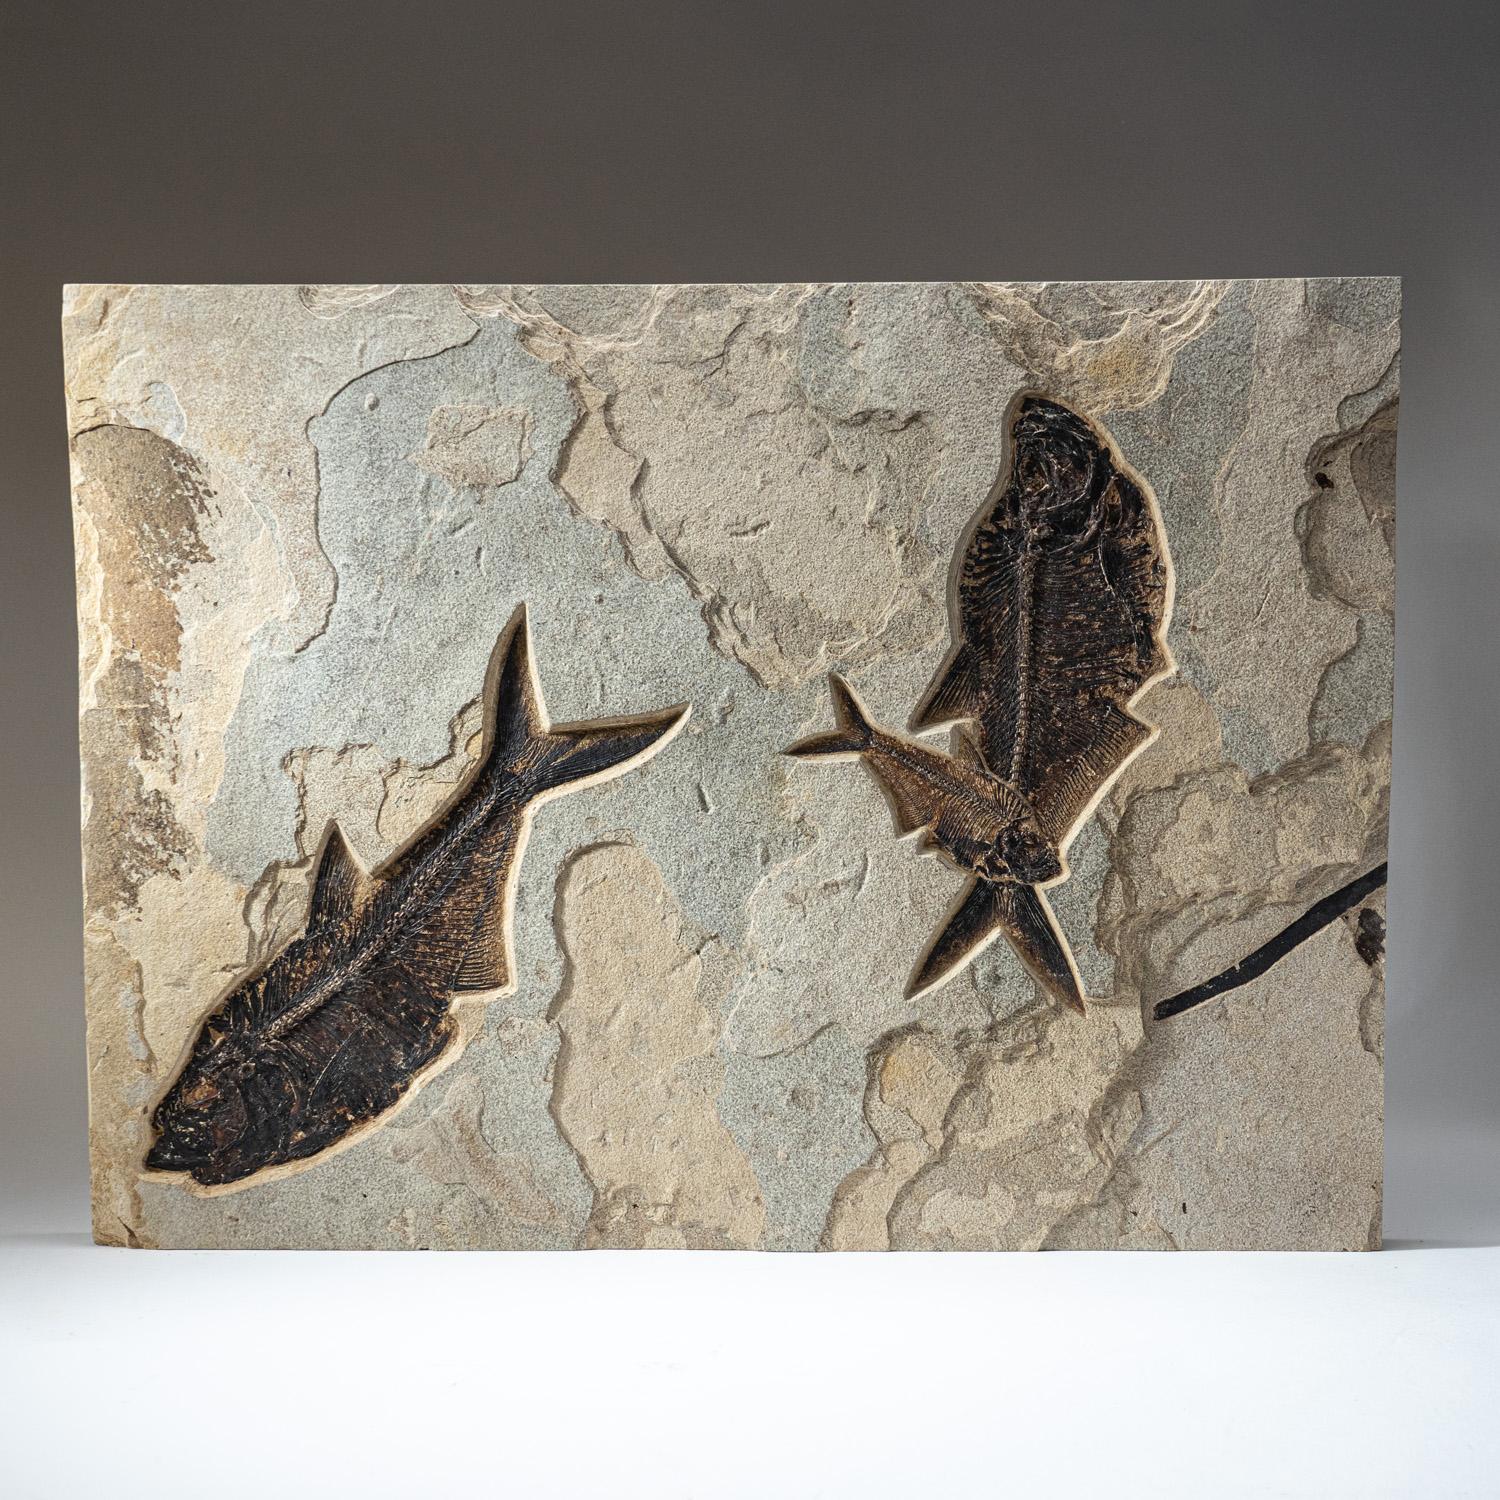 Plaque fossilisée de 60 livres, avec trois magnifiques poissons Diplomytus fossilisés dans leur matrice naturelle. Vers le côté droit de cette pièce, il y a une belle superposition de deux poissons. C'est une trouvaille peu commune. L'ensemble de la